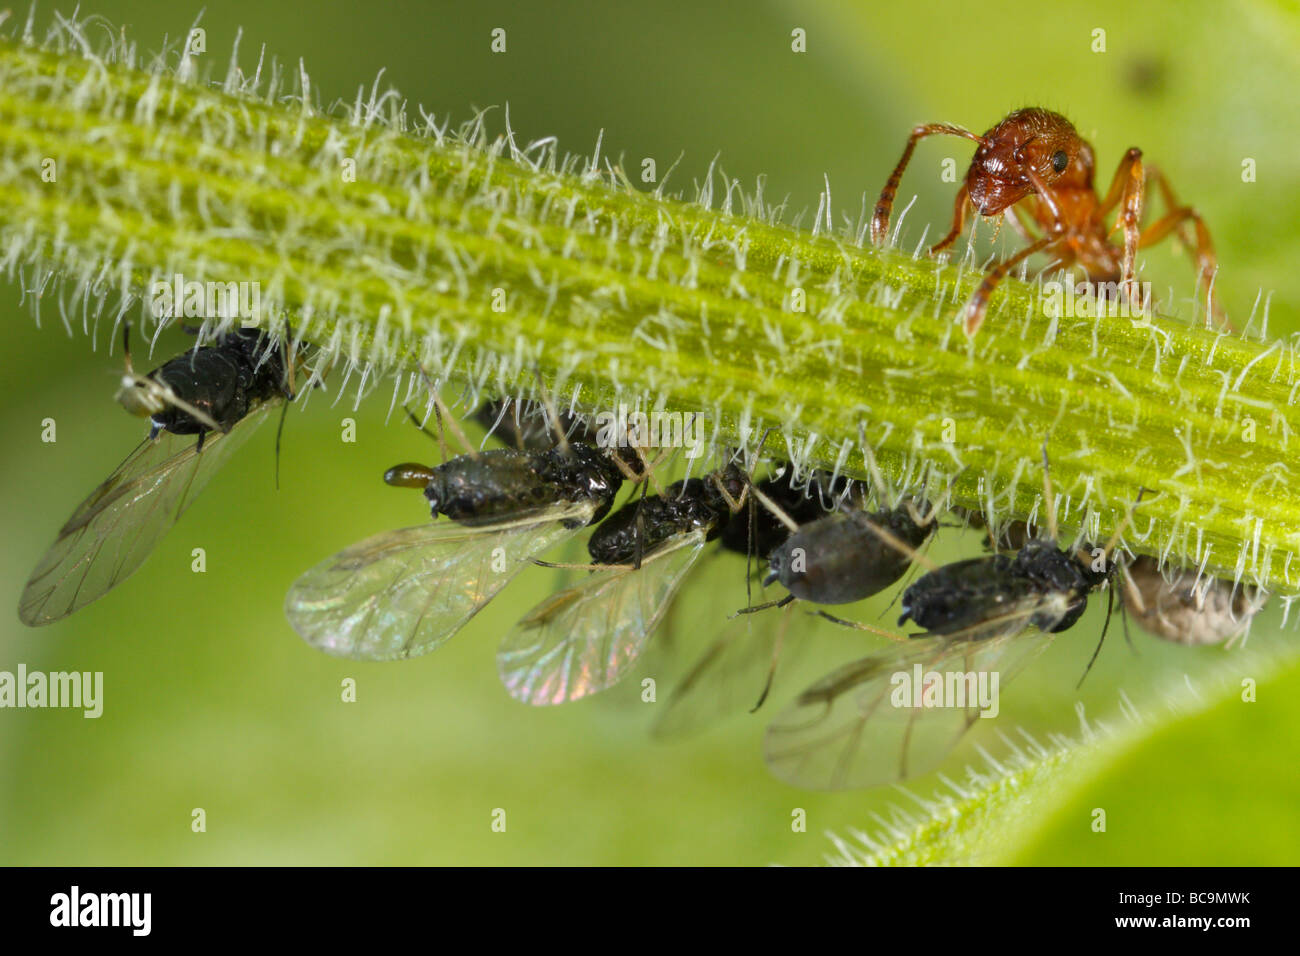 Hormiga Myrmica tendiendo a los áfidos. Ellos leche estos pulgones, el melón es muy rico en azúcar. Foto de stock